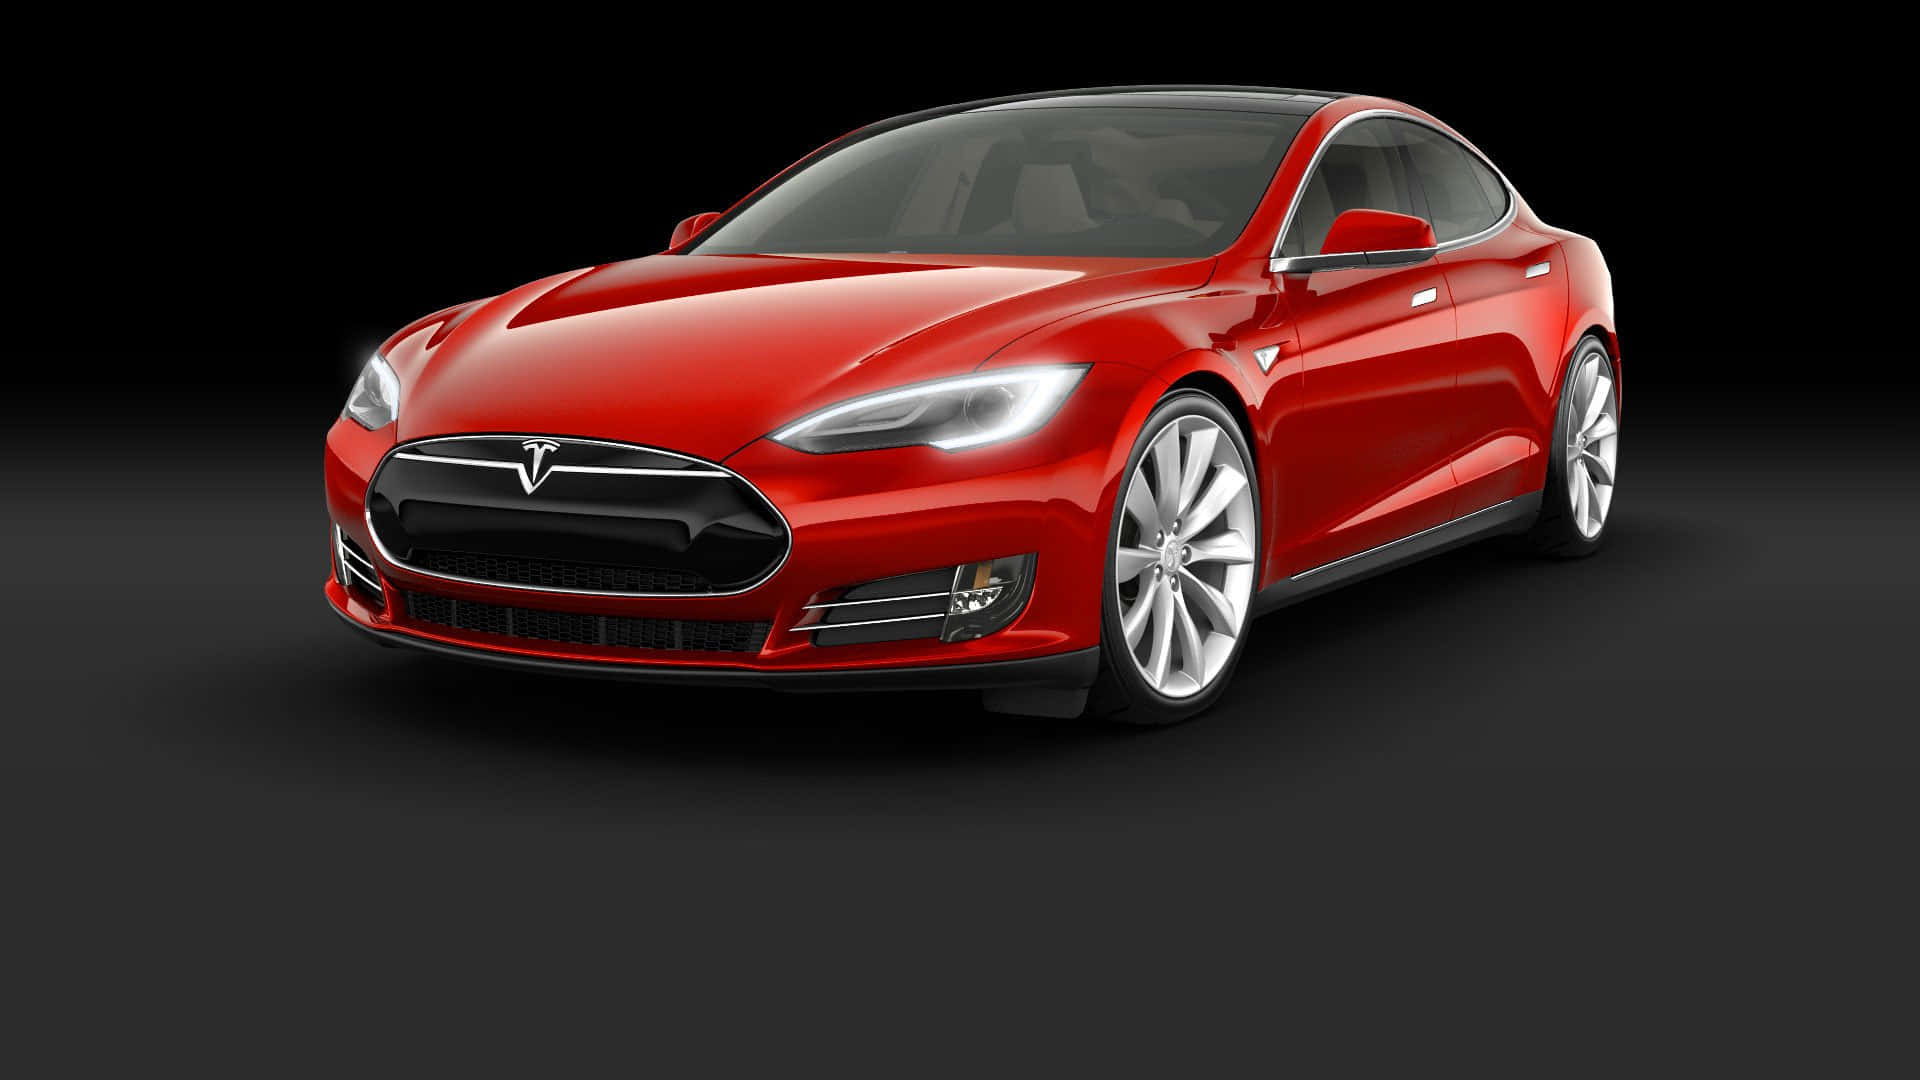 Teslamodel X | Elektrisk Bil Som Omdefinierar Lyxkörning